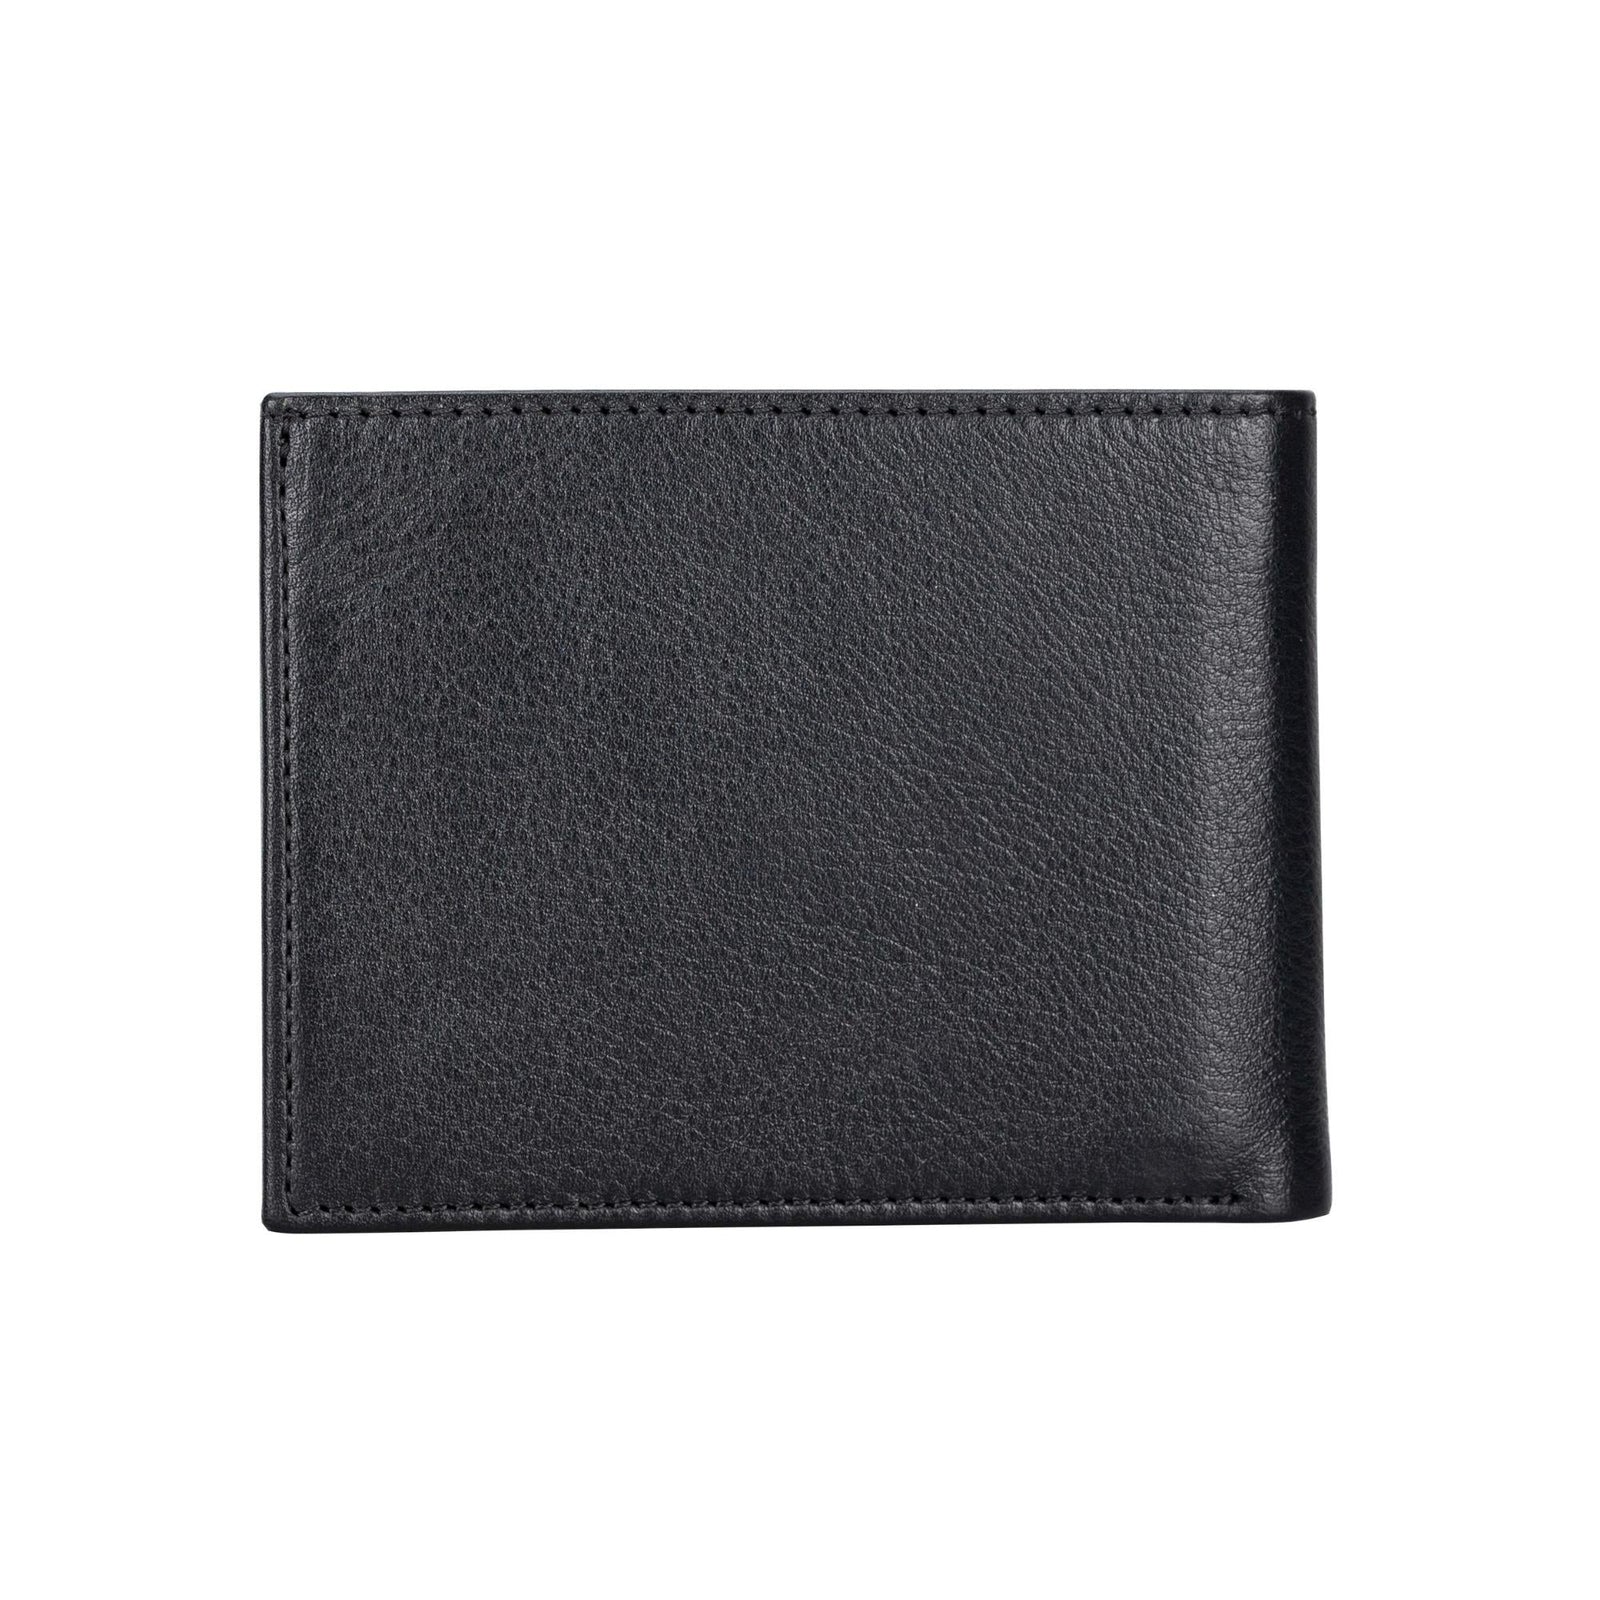 Aspen Premium Full-Grain Leather Wallet for Men-45